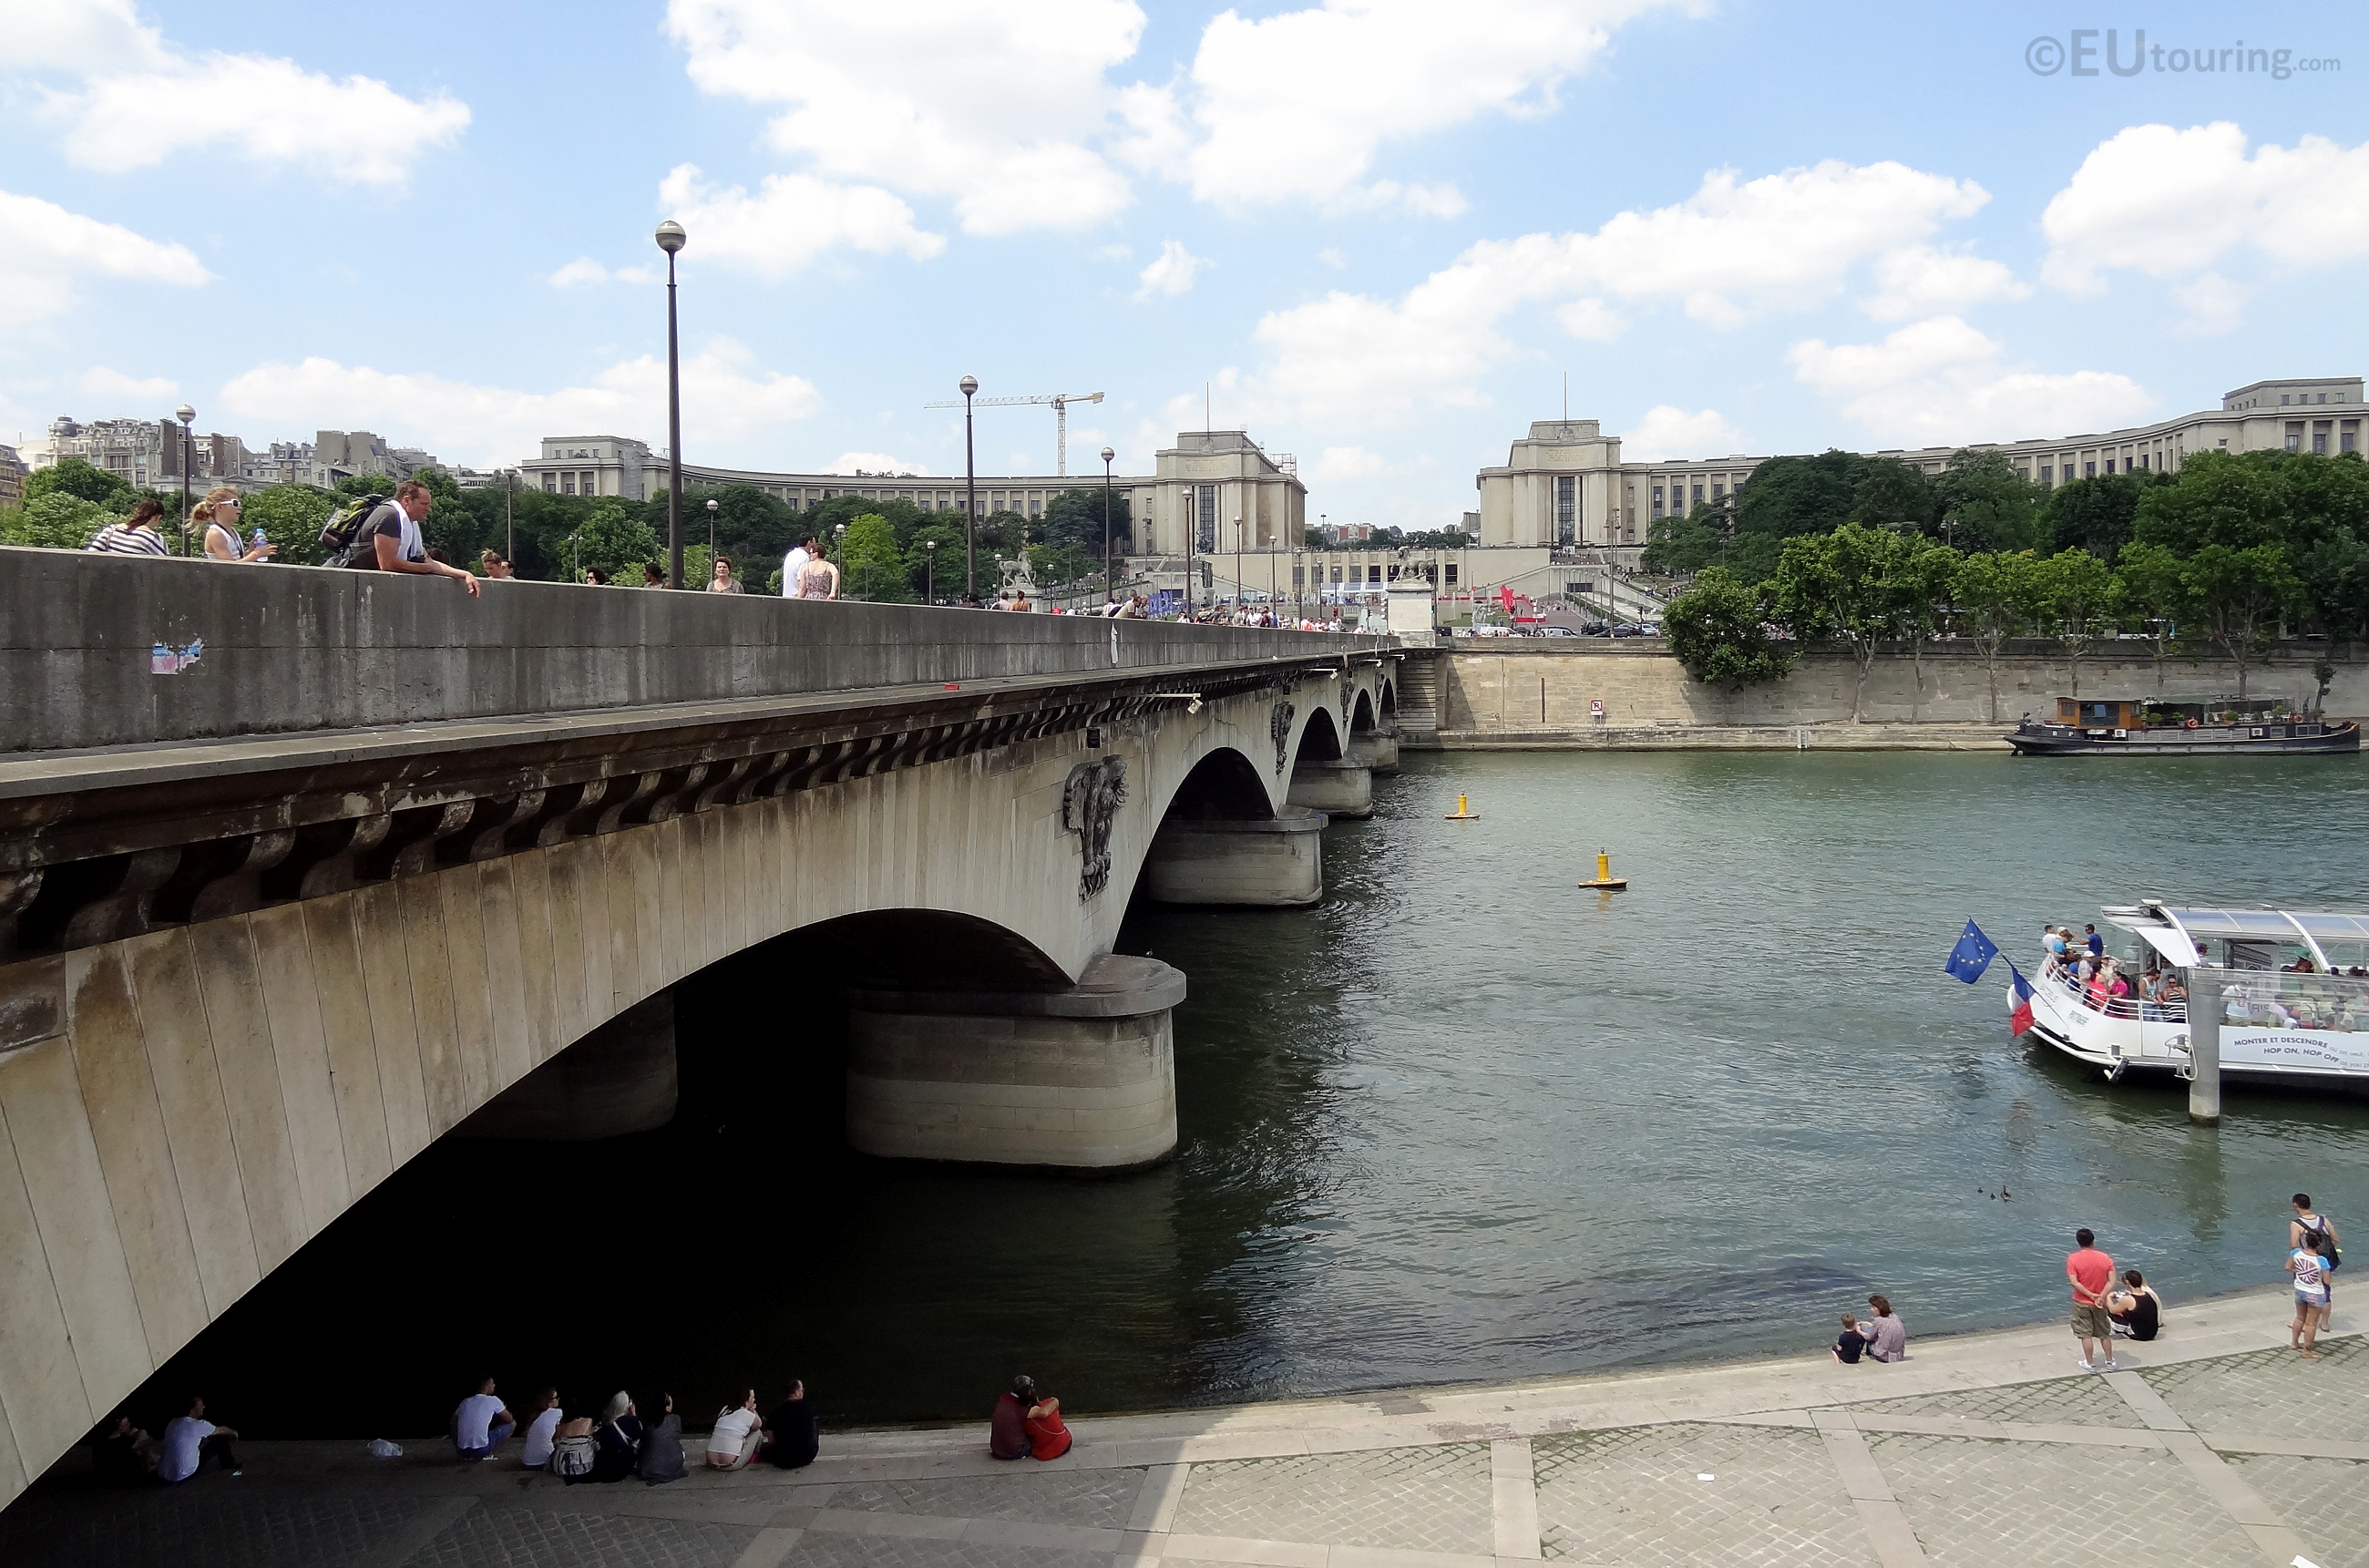 Side of the Pont d'Iena bridge